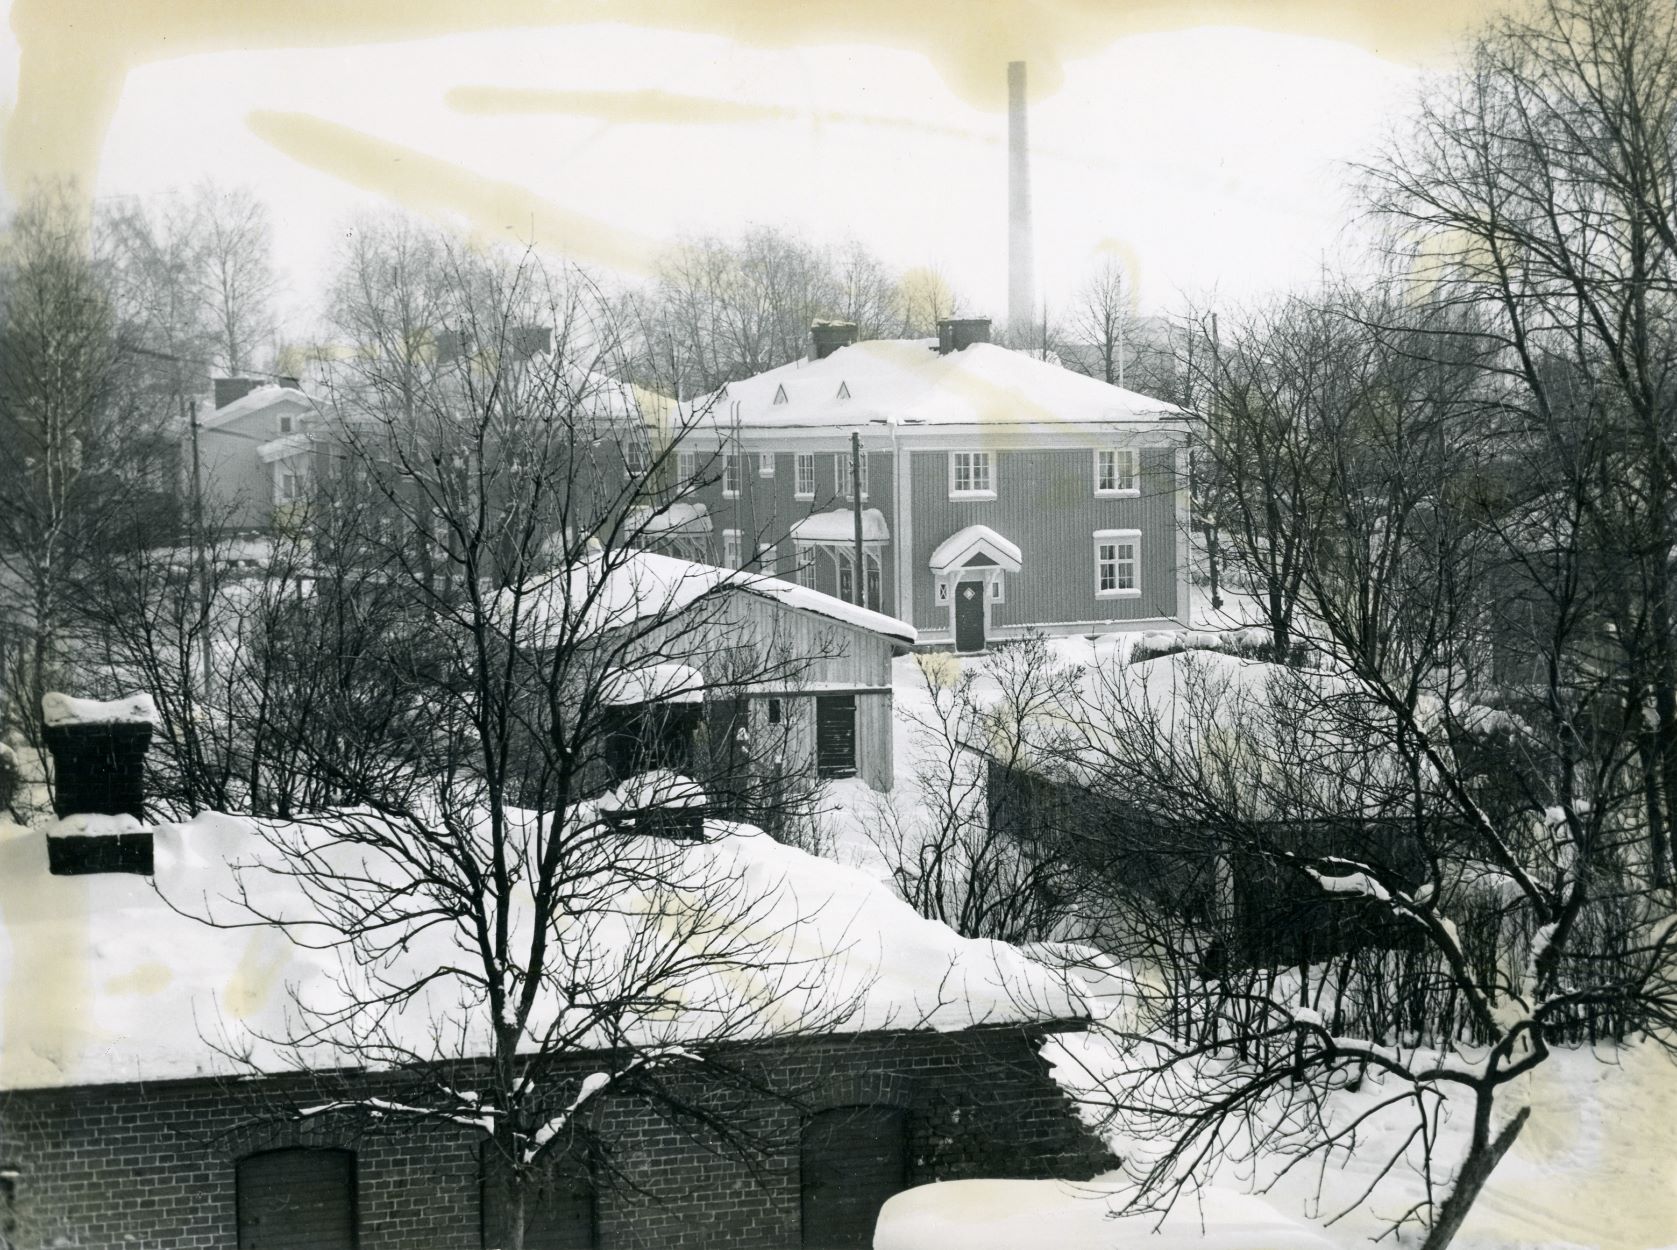 VR:n tiilivarasto ja sen takana kaksikerroksisia asuinkasarmeja (rakennettu 1924) kuvattuna Kirkkopolulta. Kuva: Riihimäen kaupunginmuseo